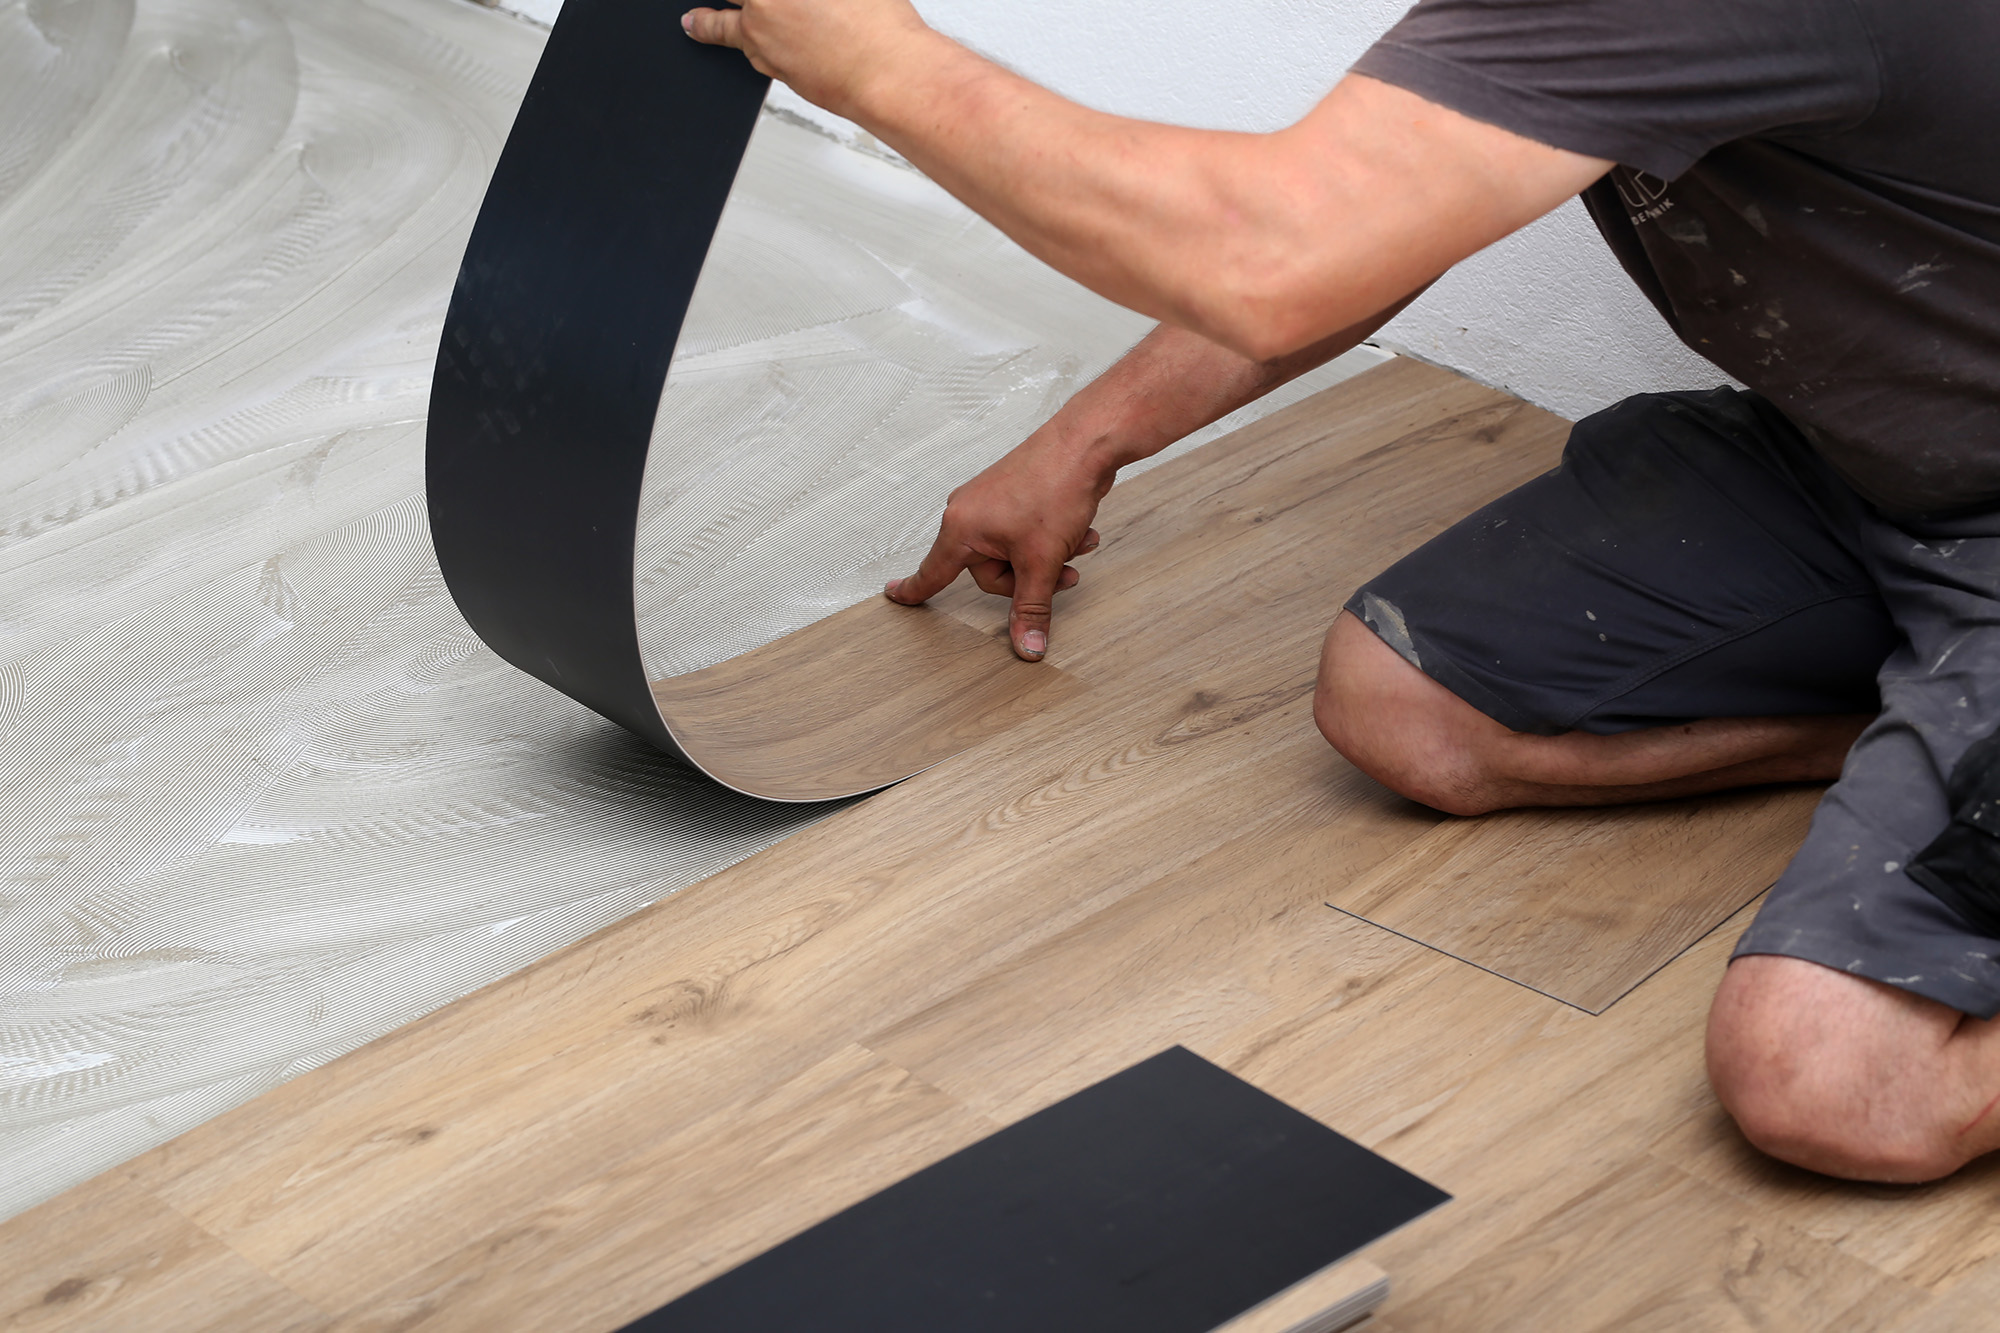 Worker Installing New Vinyl Tile Floor